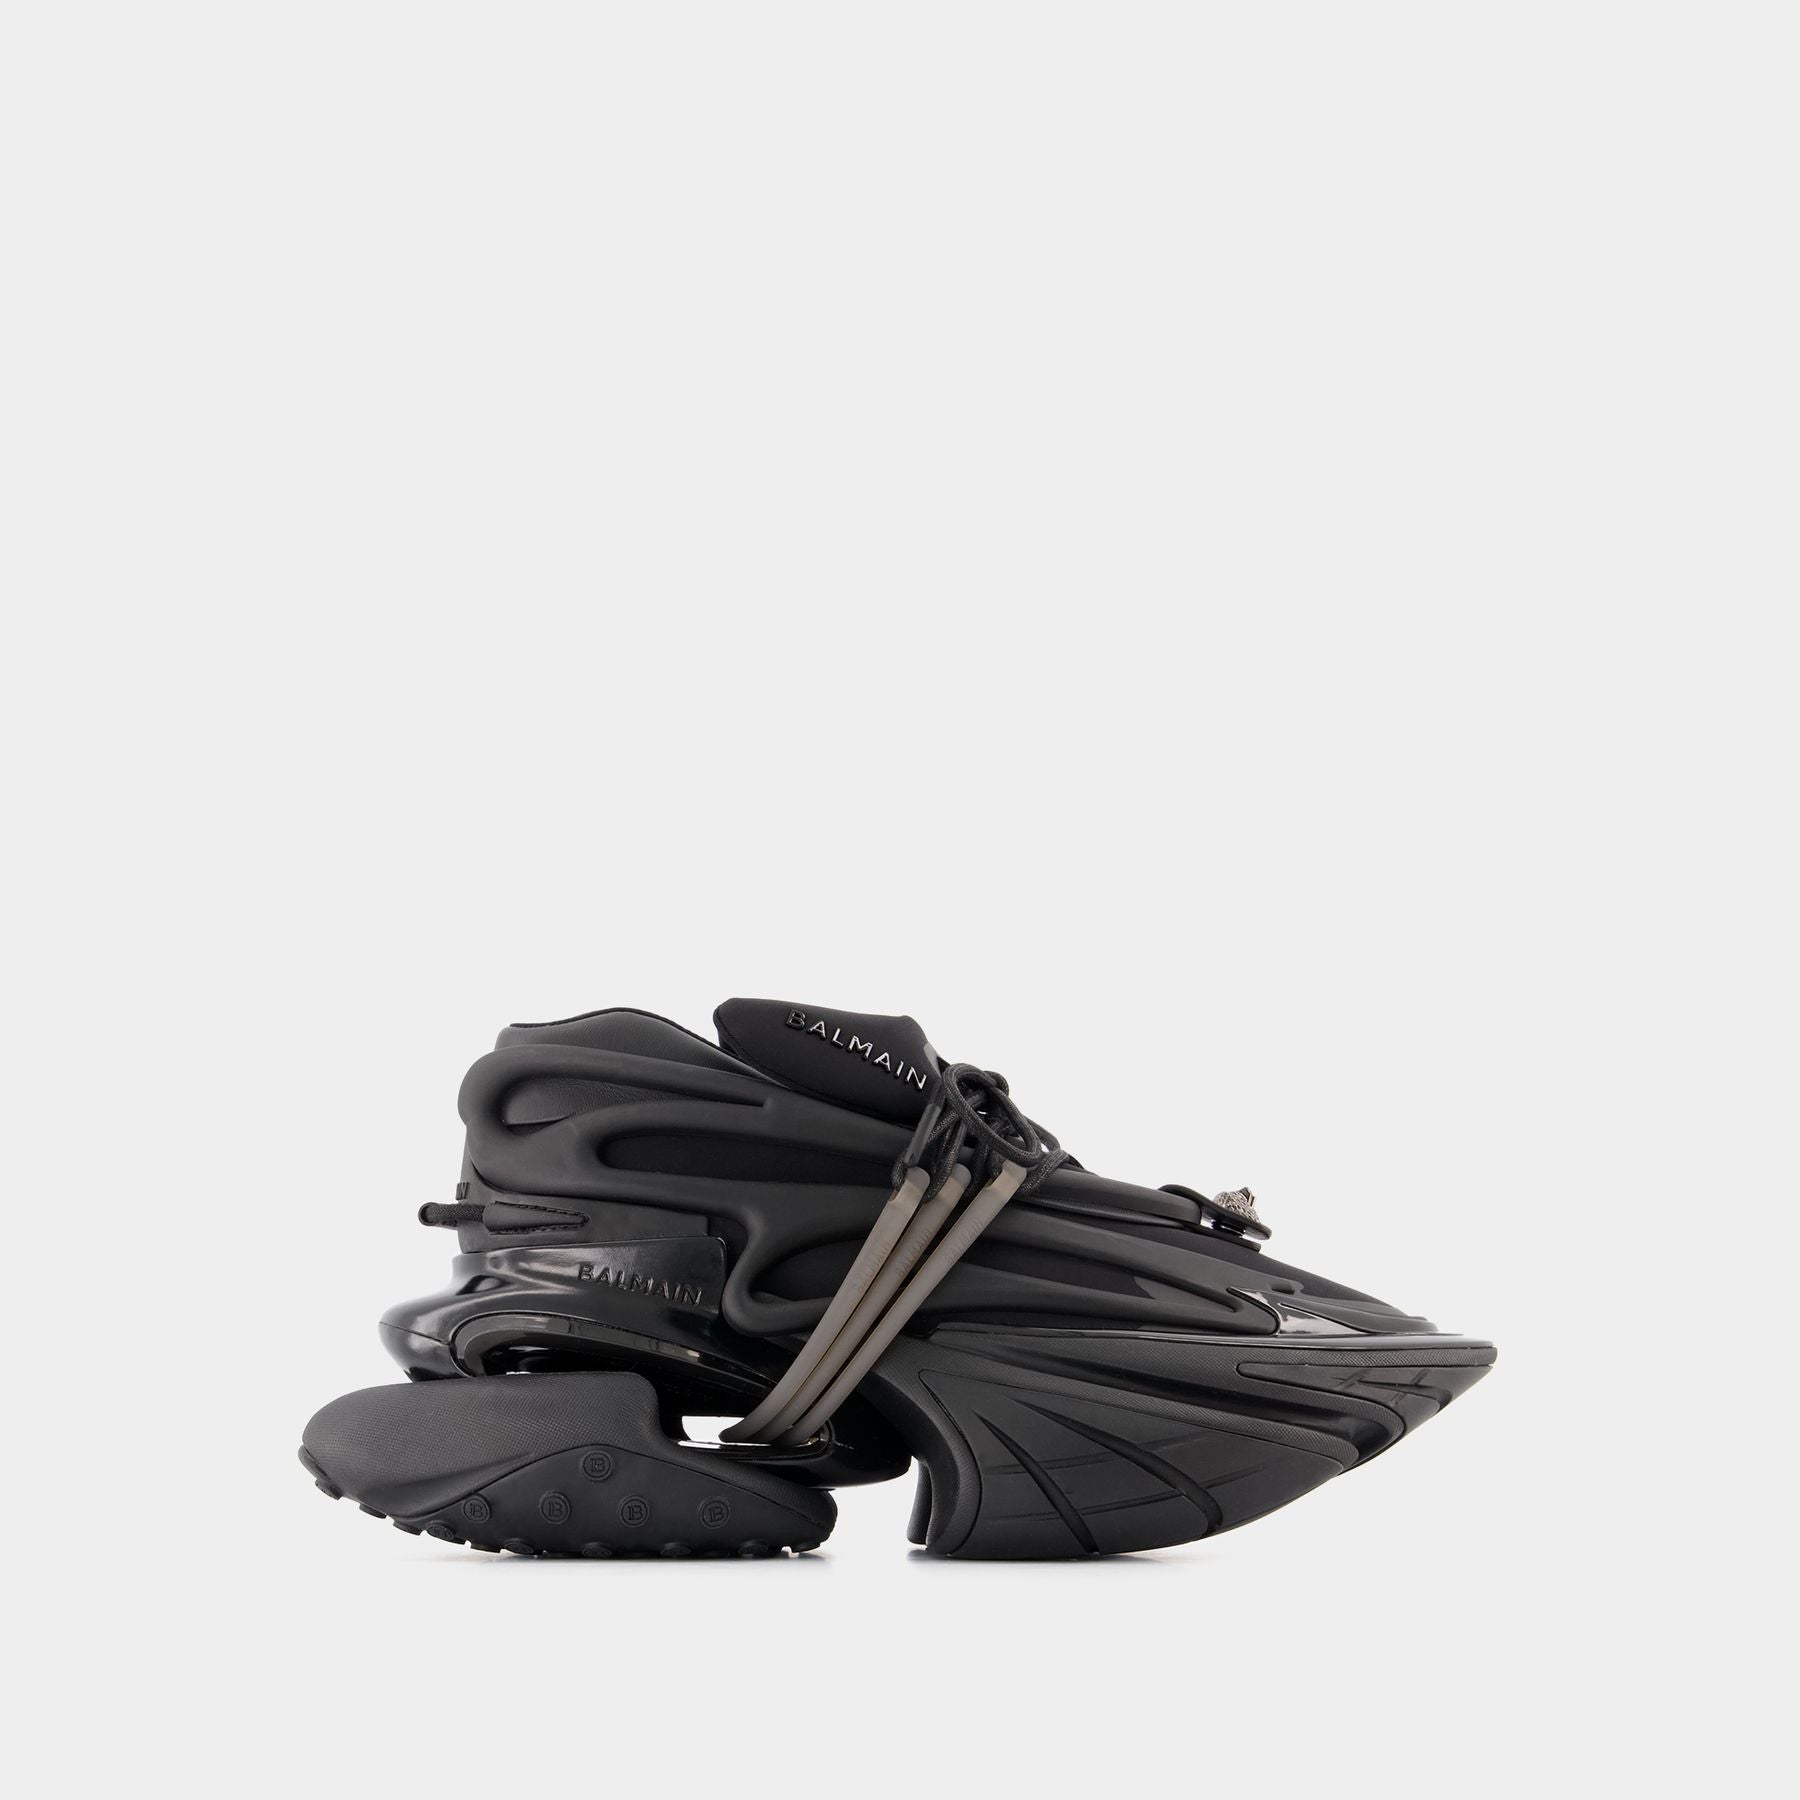 Unicorn Sneakers - Balmain - Multi - Leather